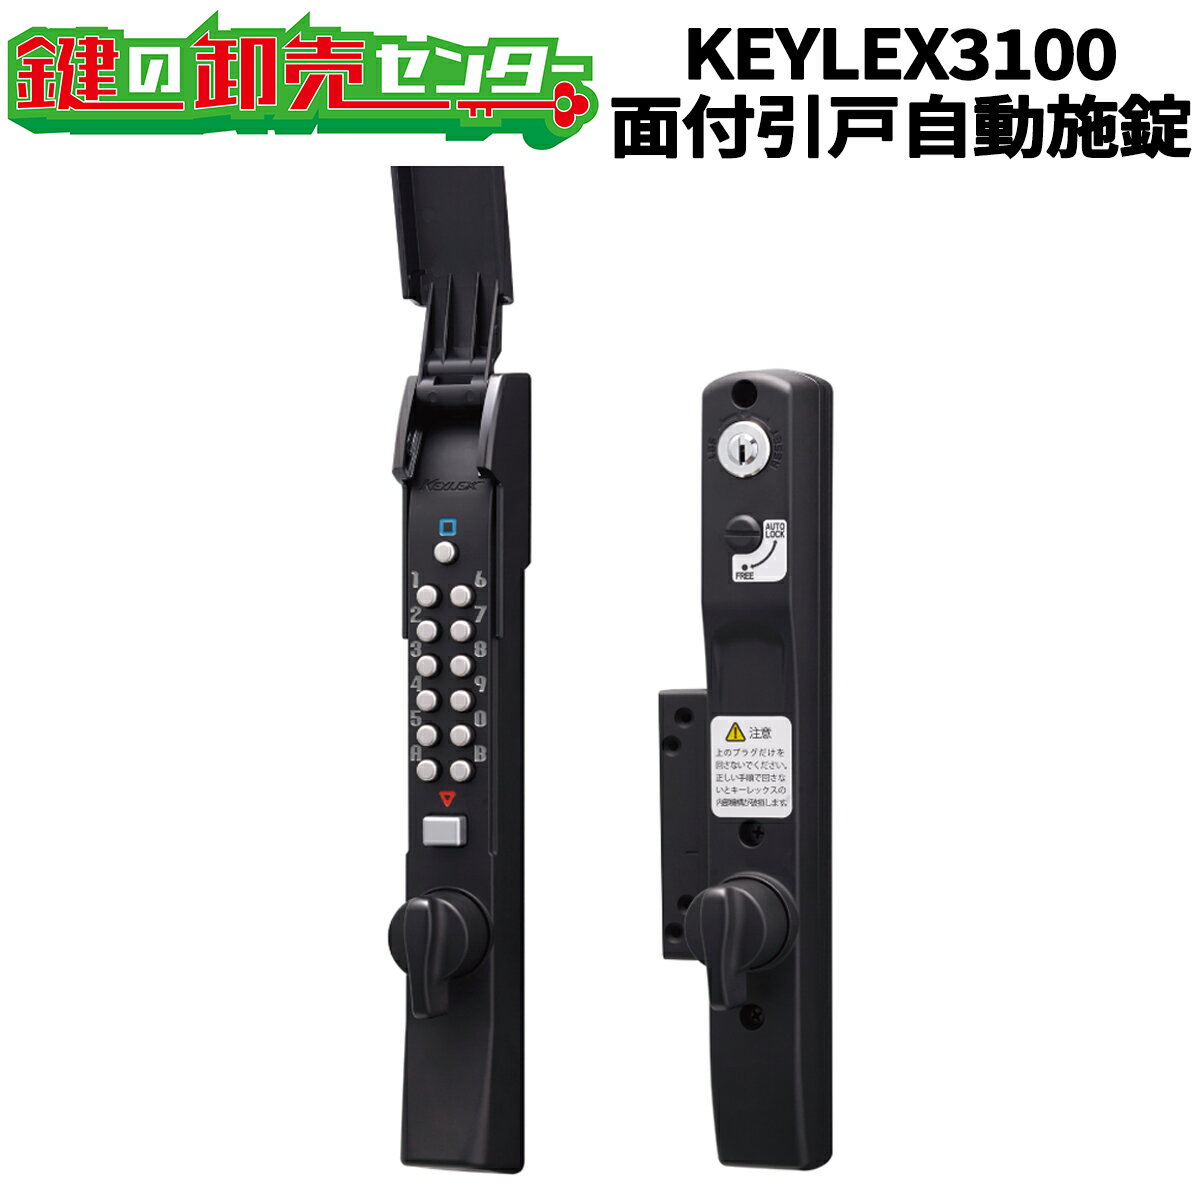 KEYLEX,キーレックス3100　面付引戸自動施錠 【商品情報】 こちらの商品はKEYLEX,キーレックス3100　面付引戸自動施錠です。 こちらの商品は、納期が実働2〜3週間前後かかる商品になります。 引戸製品で唯一の「クイックナンバーチェンジ」機能を搭載したモデルです。 自動施錠機能により、扉の閉め忘れを防止します。 こちらの商品は、暗証番号の変更を「キー」を使用して行う仕様です。 ■タイプ 下記から、オプションでタイプをご選択ください。 詳細は商品画像をご確認ください。 ・K328C（面付引戸自動施錠） 　*付属されているキーの本数は通常2本です。 　*他社シリンダーは組み込めません。 ・K328CM（面付引戸自動施錠・鍵付）（付属キー2本） 　*シリンダーはキーレックスの底面に付きます。 　*標準でシリンダーは全て同じ鍵番号になります。( 付属キー2本 ) 　*他社シリンダーは組み込めません。 ■仕上 下記3色から、オプションで仕上げをご選択ください。 ・AS ( シルバー ) 塗装 ・AB ( アンバー ) 塗装 ・BL ( ブラック ) 塗装 ・VSA ( 抗ウイルスシルバーアッシュ ) 塗装 ※VSA以外には標準でカバーが同梱されております。 ■材質：アルミ ■標準扉厚：30 ~ 45mm ■記憶番号通り数：4096通り ■適応扉重量：60kg以下 ■錠前：HAM3100錠 ■受座：面付受座 ■同梱スペーサー 本体用：厚さ2 / 3.5 / 4.5mm 各1枚 受座用：1mm 2枚 / 3mm 1枚 ▼キーレックス3100用カバーはこちら ※VSA以外には標準でカバーが同梱されております。 【切欠図】 ※リンク先は『決済・返品・交換』ページになります。